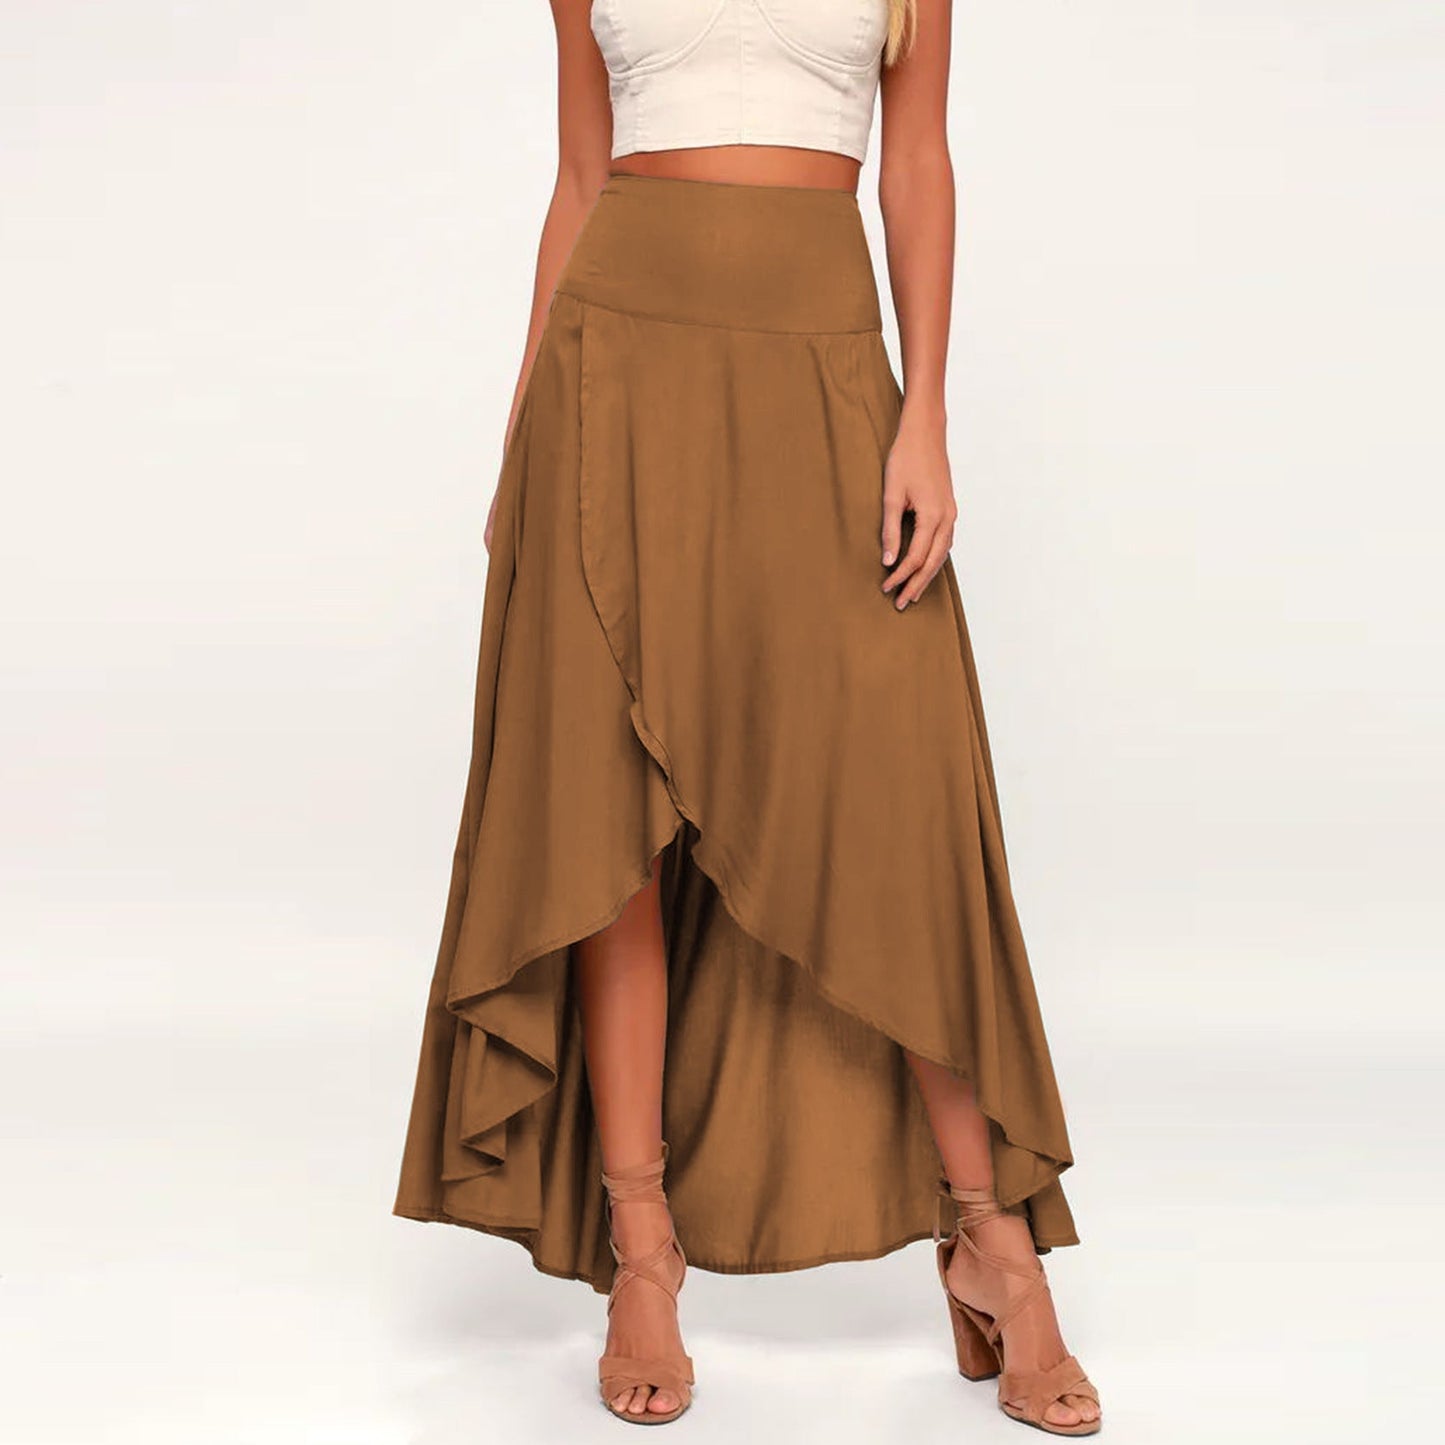 Fashion Ruffled Irregular Summer Skirts-Skirts-Black-S-Free Shipping Leatheretro